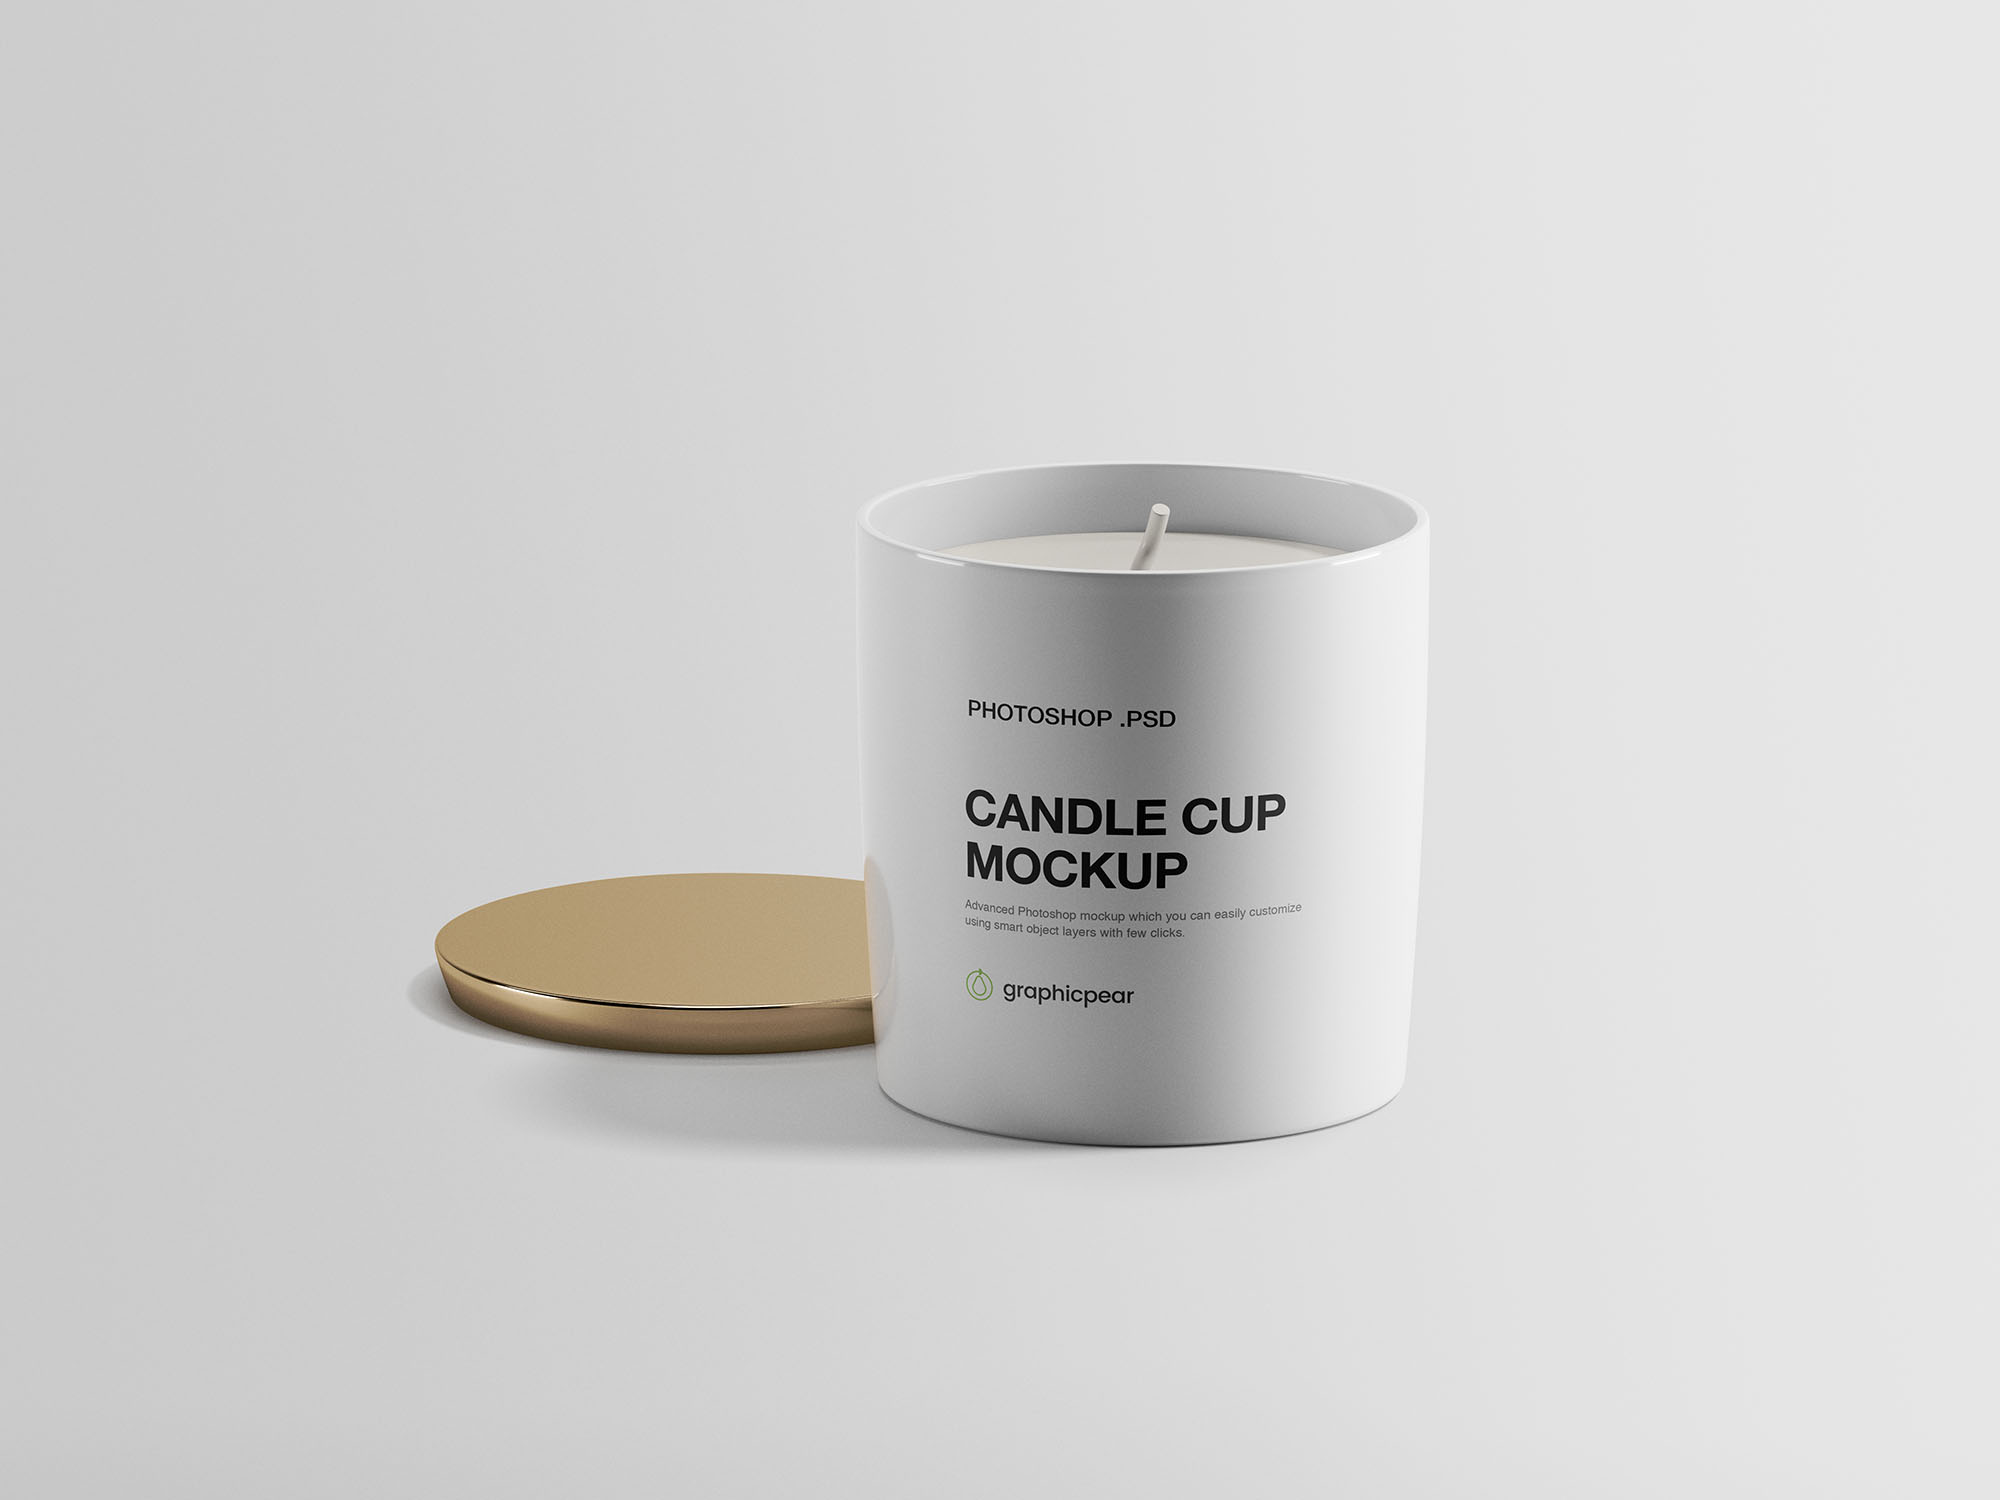 简约品牌VI设计香薰蜡烛瓷杯样机PSD智能贴图模板 Candle Cup Mockup插图